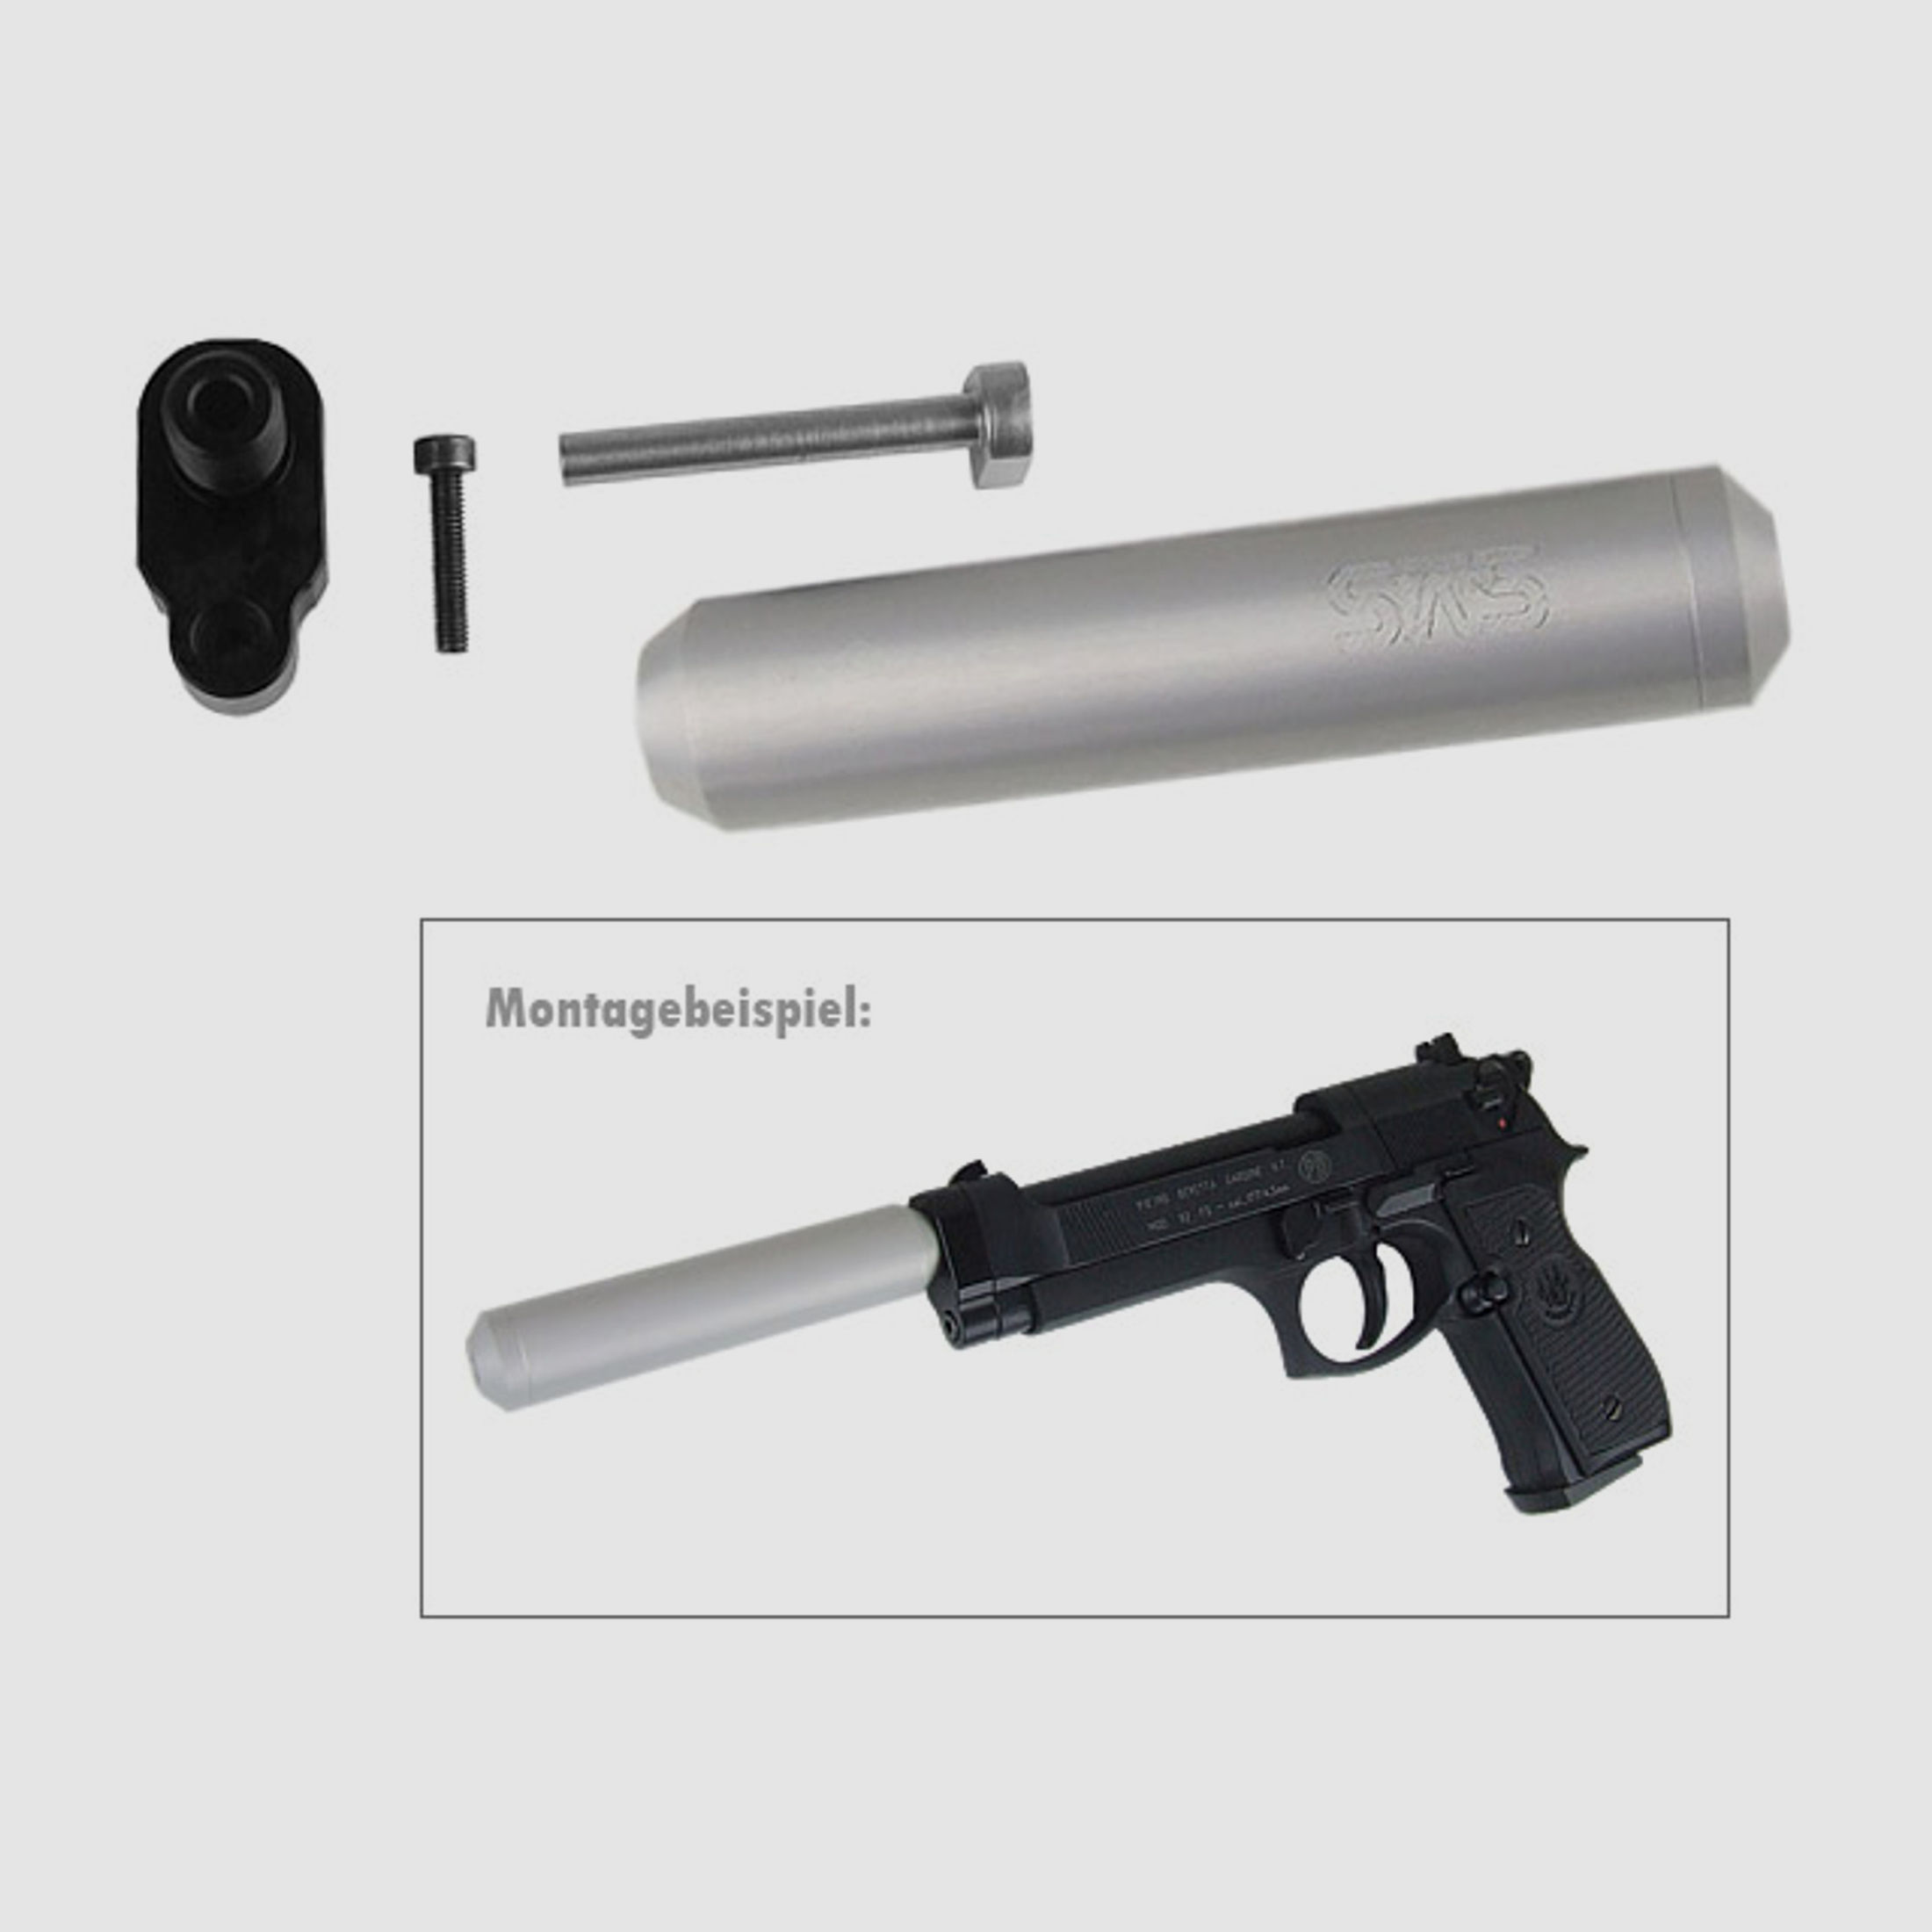 SchalldĂ¤mpfer mit 1⁄2 UNF Adapter fĂĽr CO2 Pistole Beretta M92 FS, silber (P18)